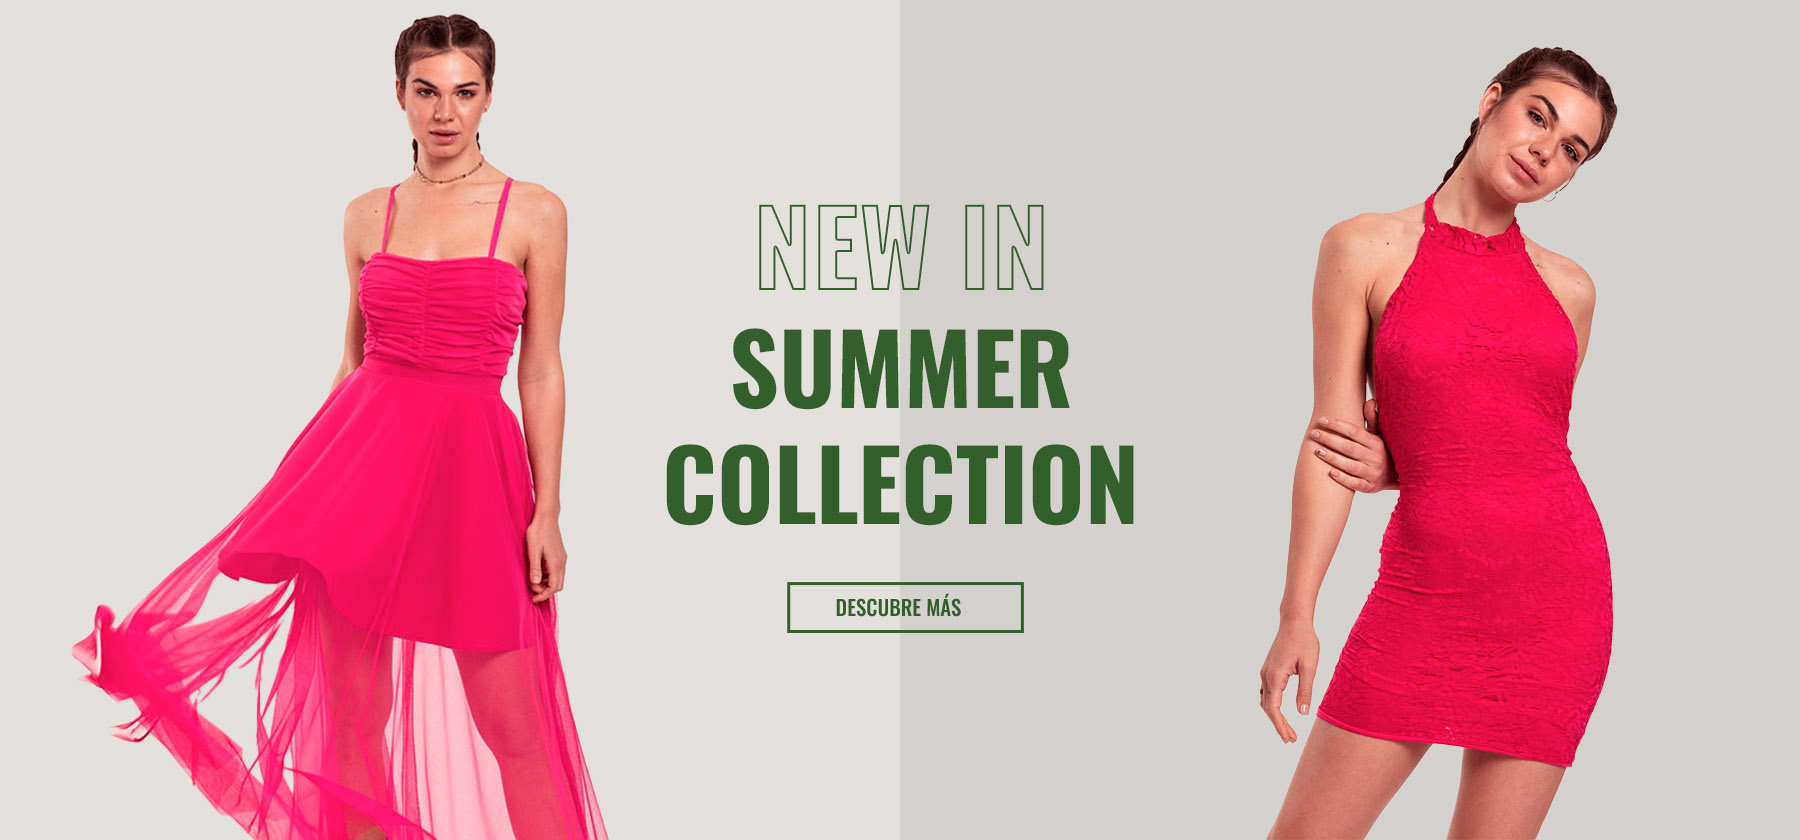 Summer Collection Equis Moda